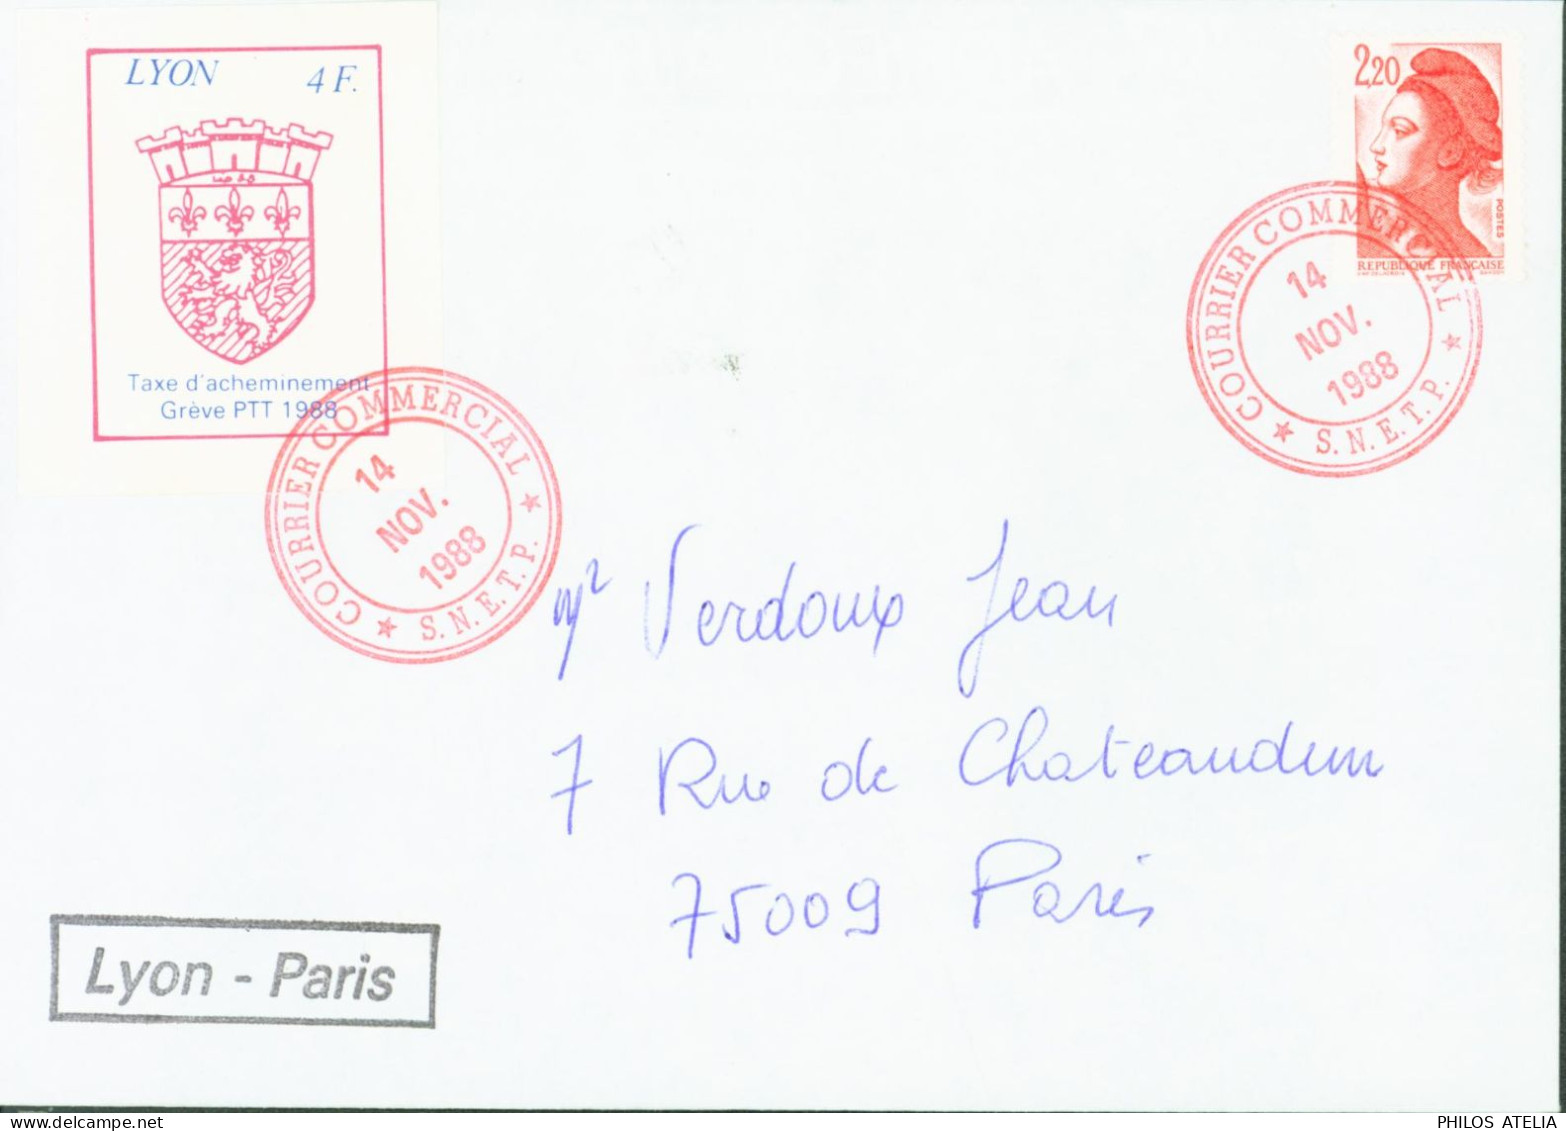 Timbre Lyon 4F Taxe D'acheminement Grève PTT 1988 Cachet Courrier Commercial 14 NO 1988 SNETP + YT N°2376 - Dokumente